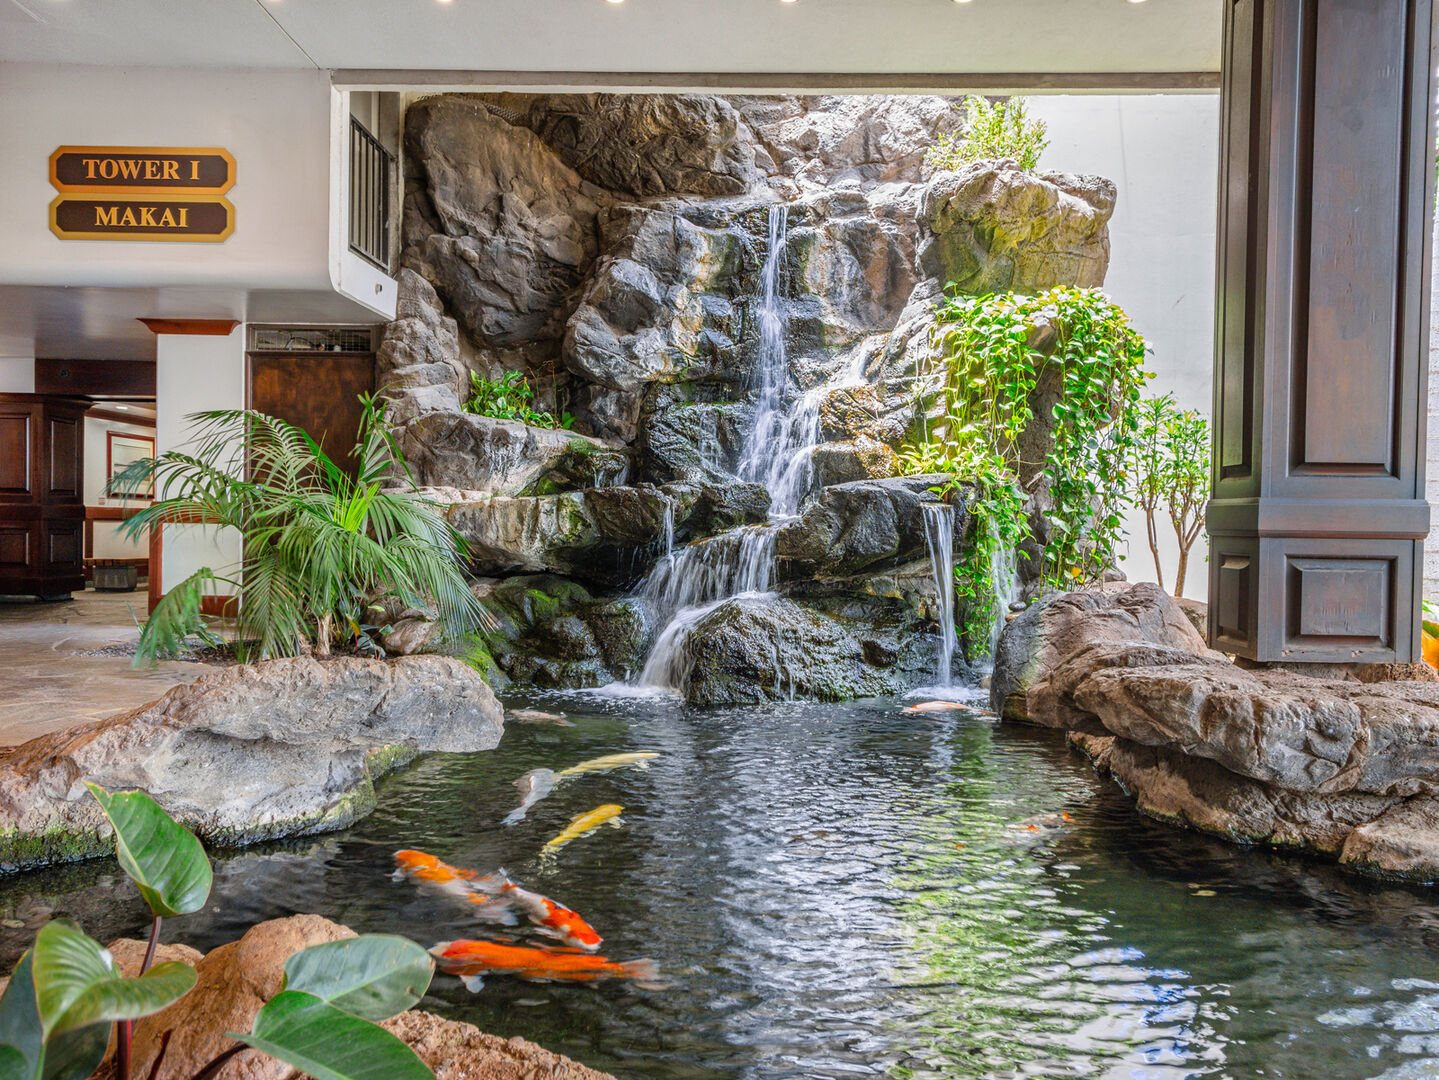 Koi pond in the lobby